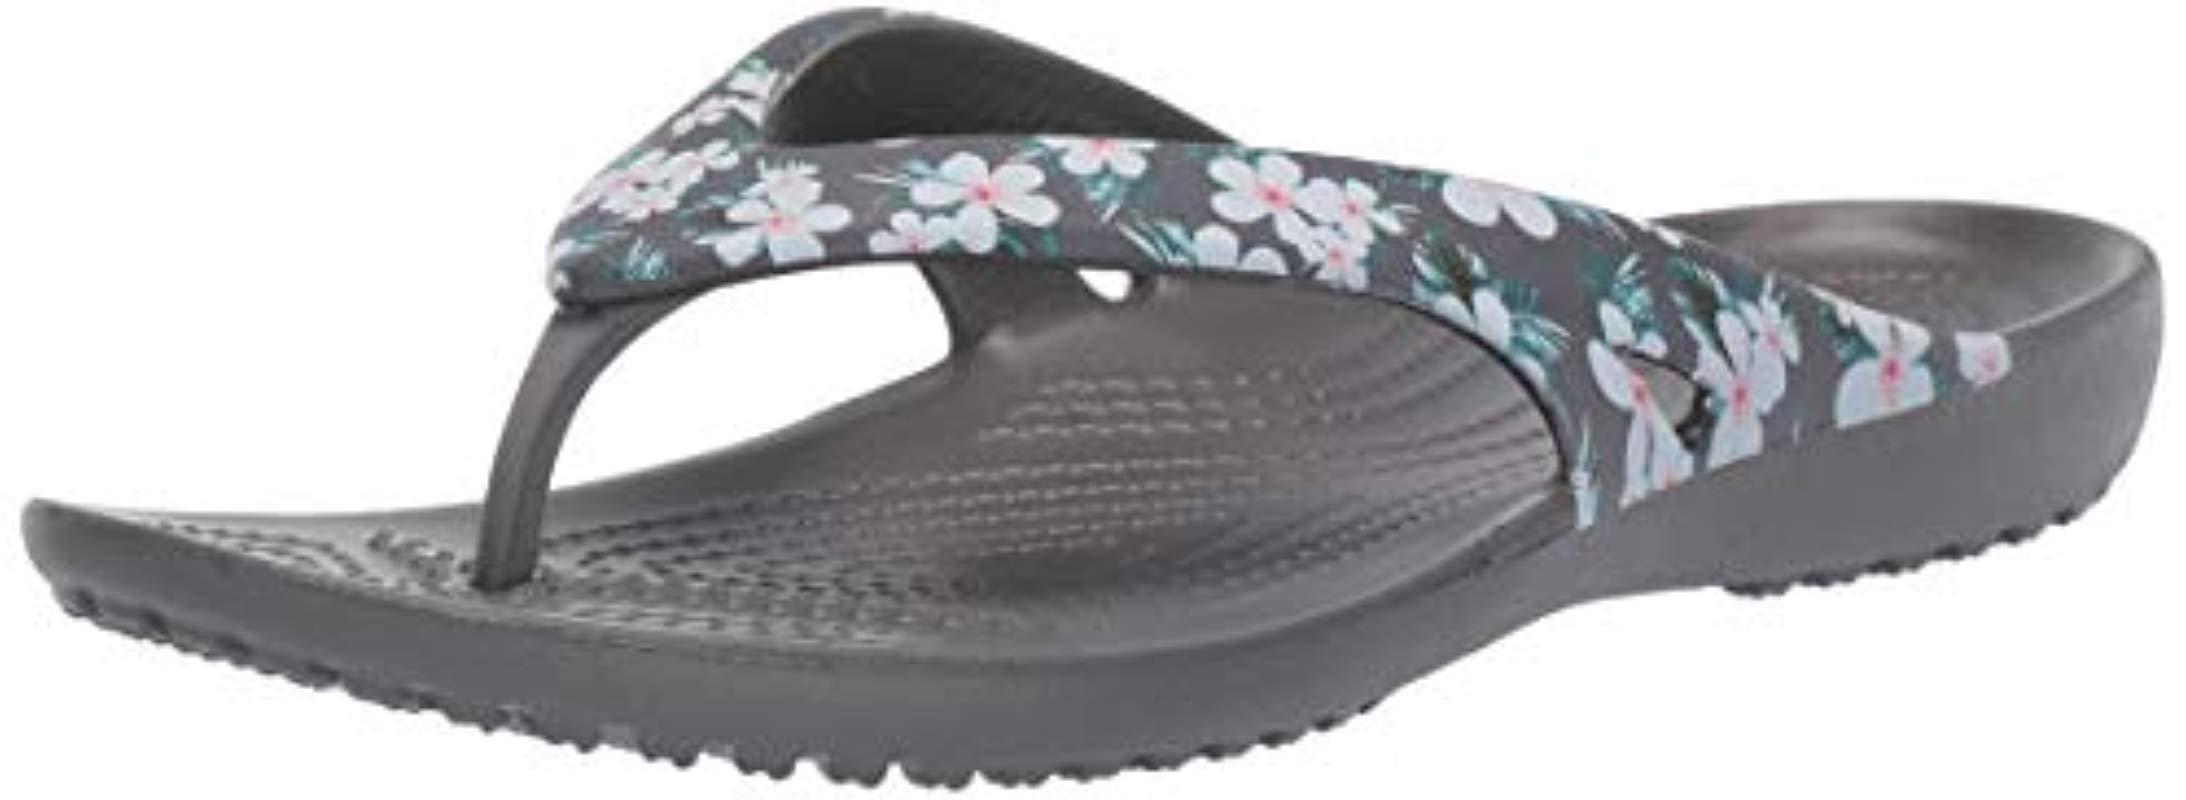 crocs floral flip flop